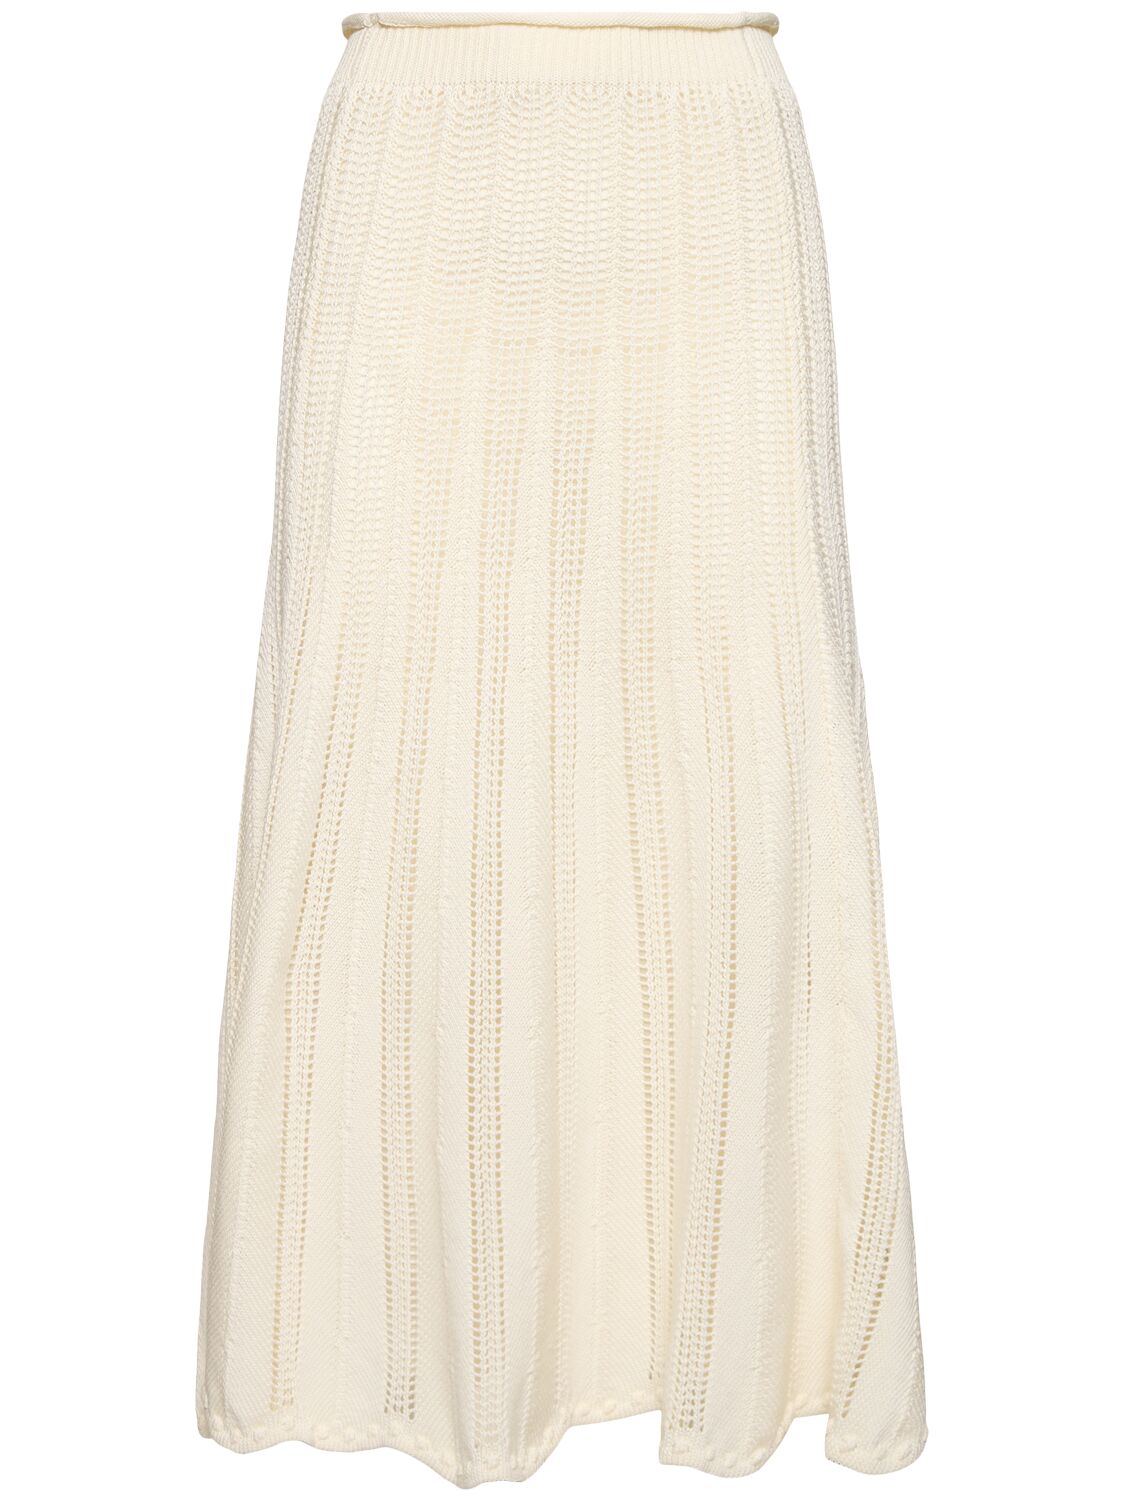 Image of Mercerized Cotton Crochet Long Skirt